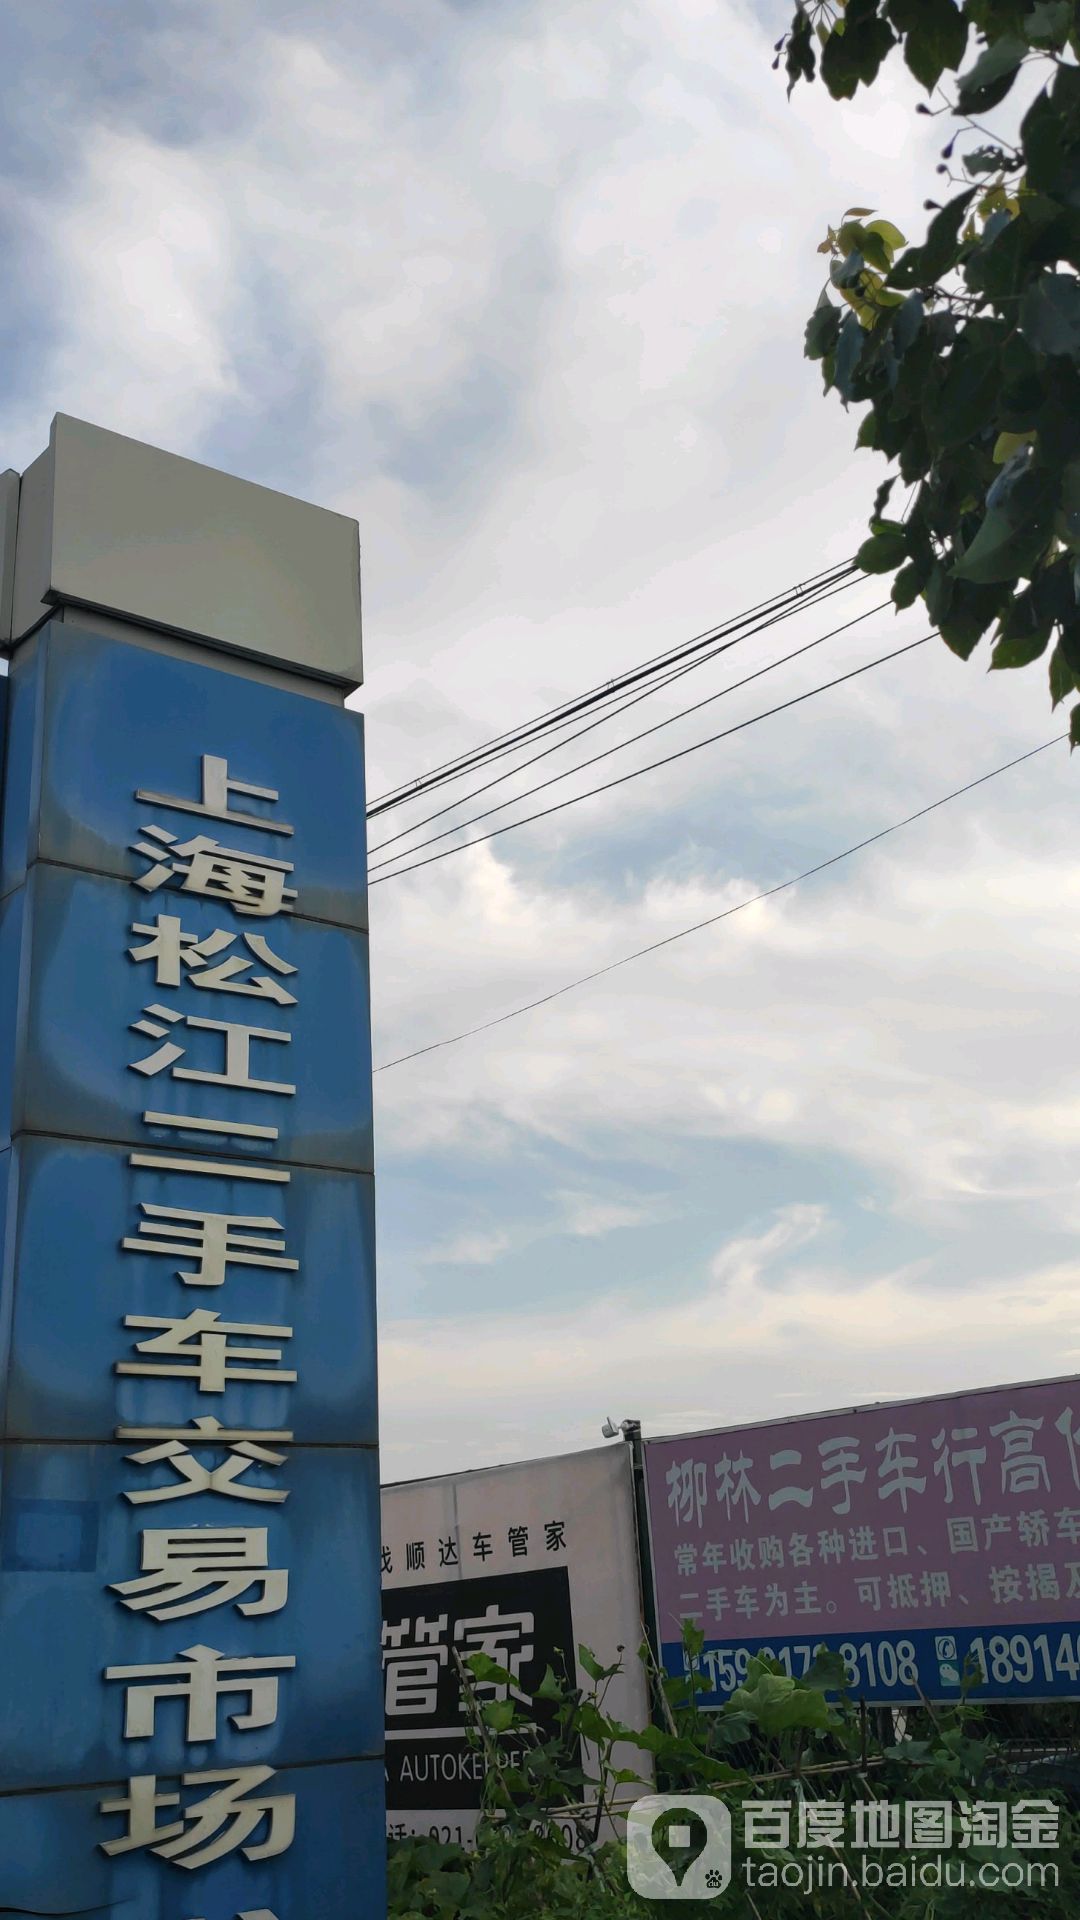 上海松江二手车交易市场 电话 路线 公交 地址 地图 预定 价格 团购 优惠 上海松江二手车交易市场在哪 怎么走 上海生活服务